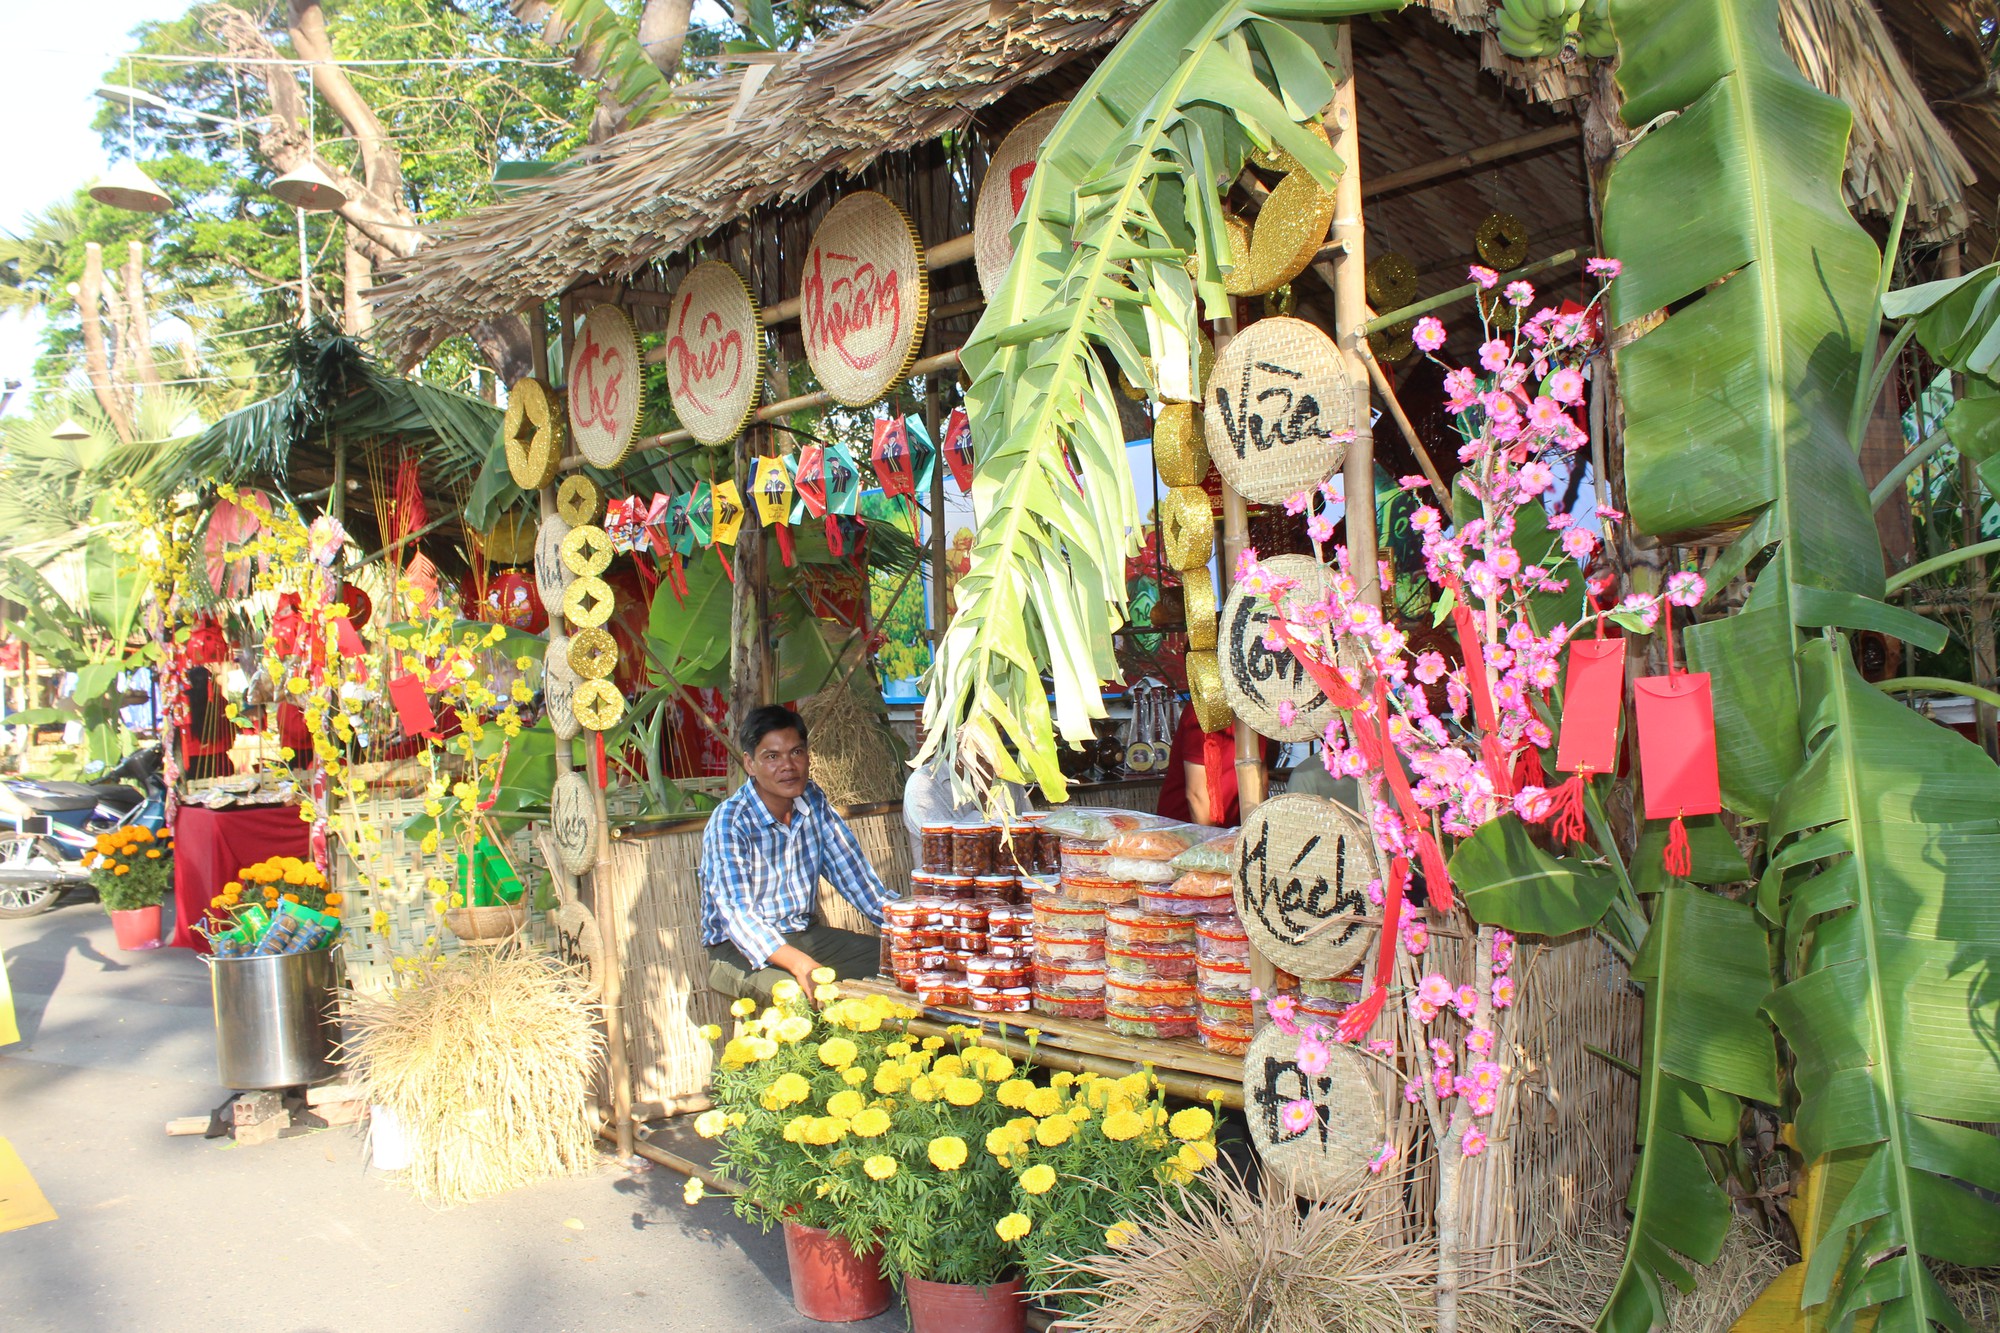 Chợ quê Tết - Những hình ảnh về chợ quê Tết sẽ đưa bạn tới những địa phương vùng quê Việt Nam, với các sản phẩm đặc trưng của mùa Tết. Nét truyền thống của chợ quê Tết sẽ giúp bạn có được trải nghiệm tuyệt vời nhất trong mùa lễ hội này.